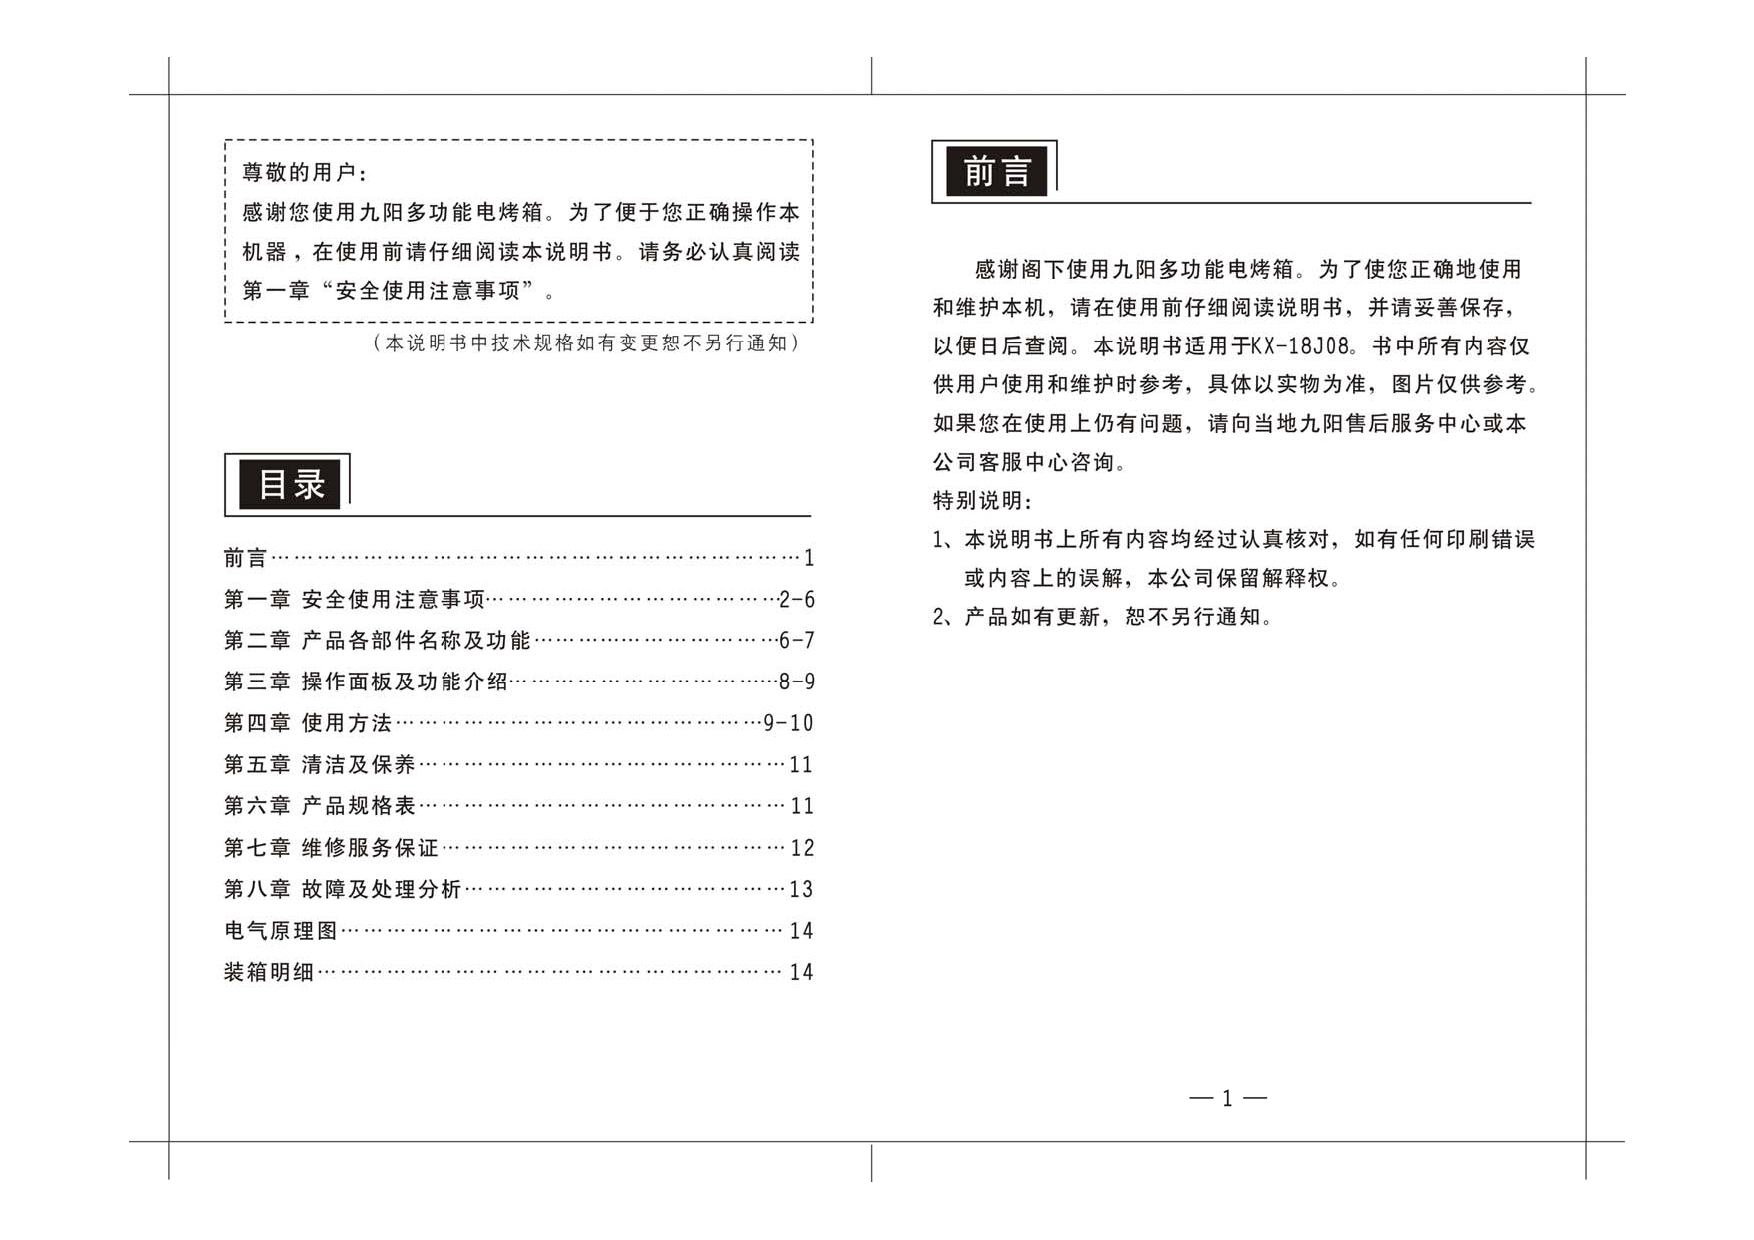 九阳 Joyyoung KX-18J08 使用说明书 第1页